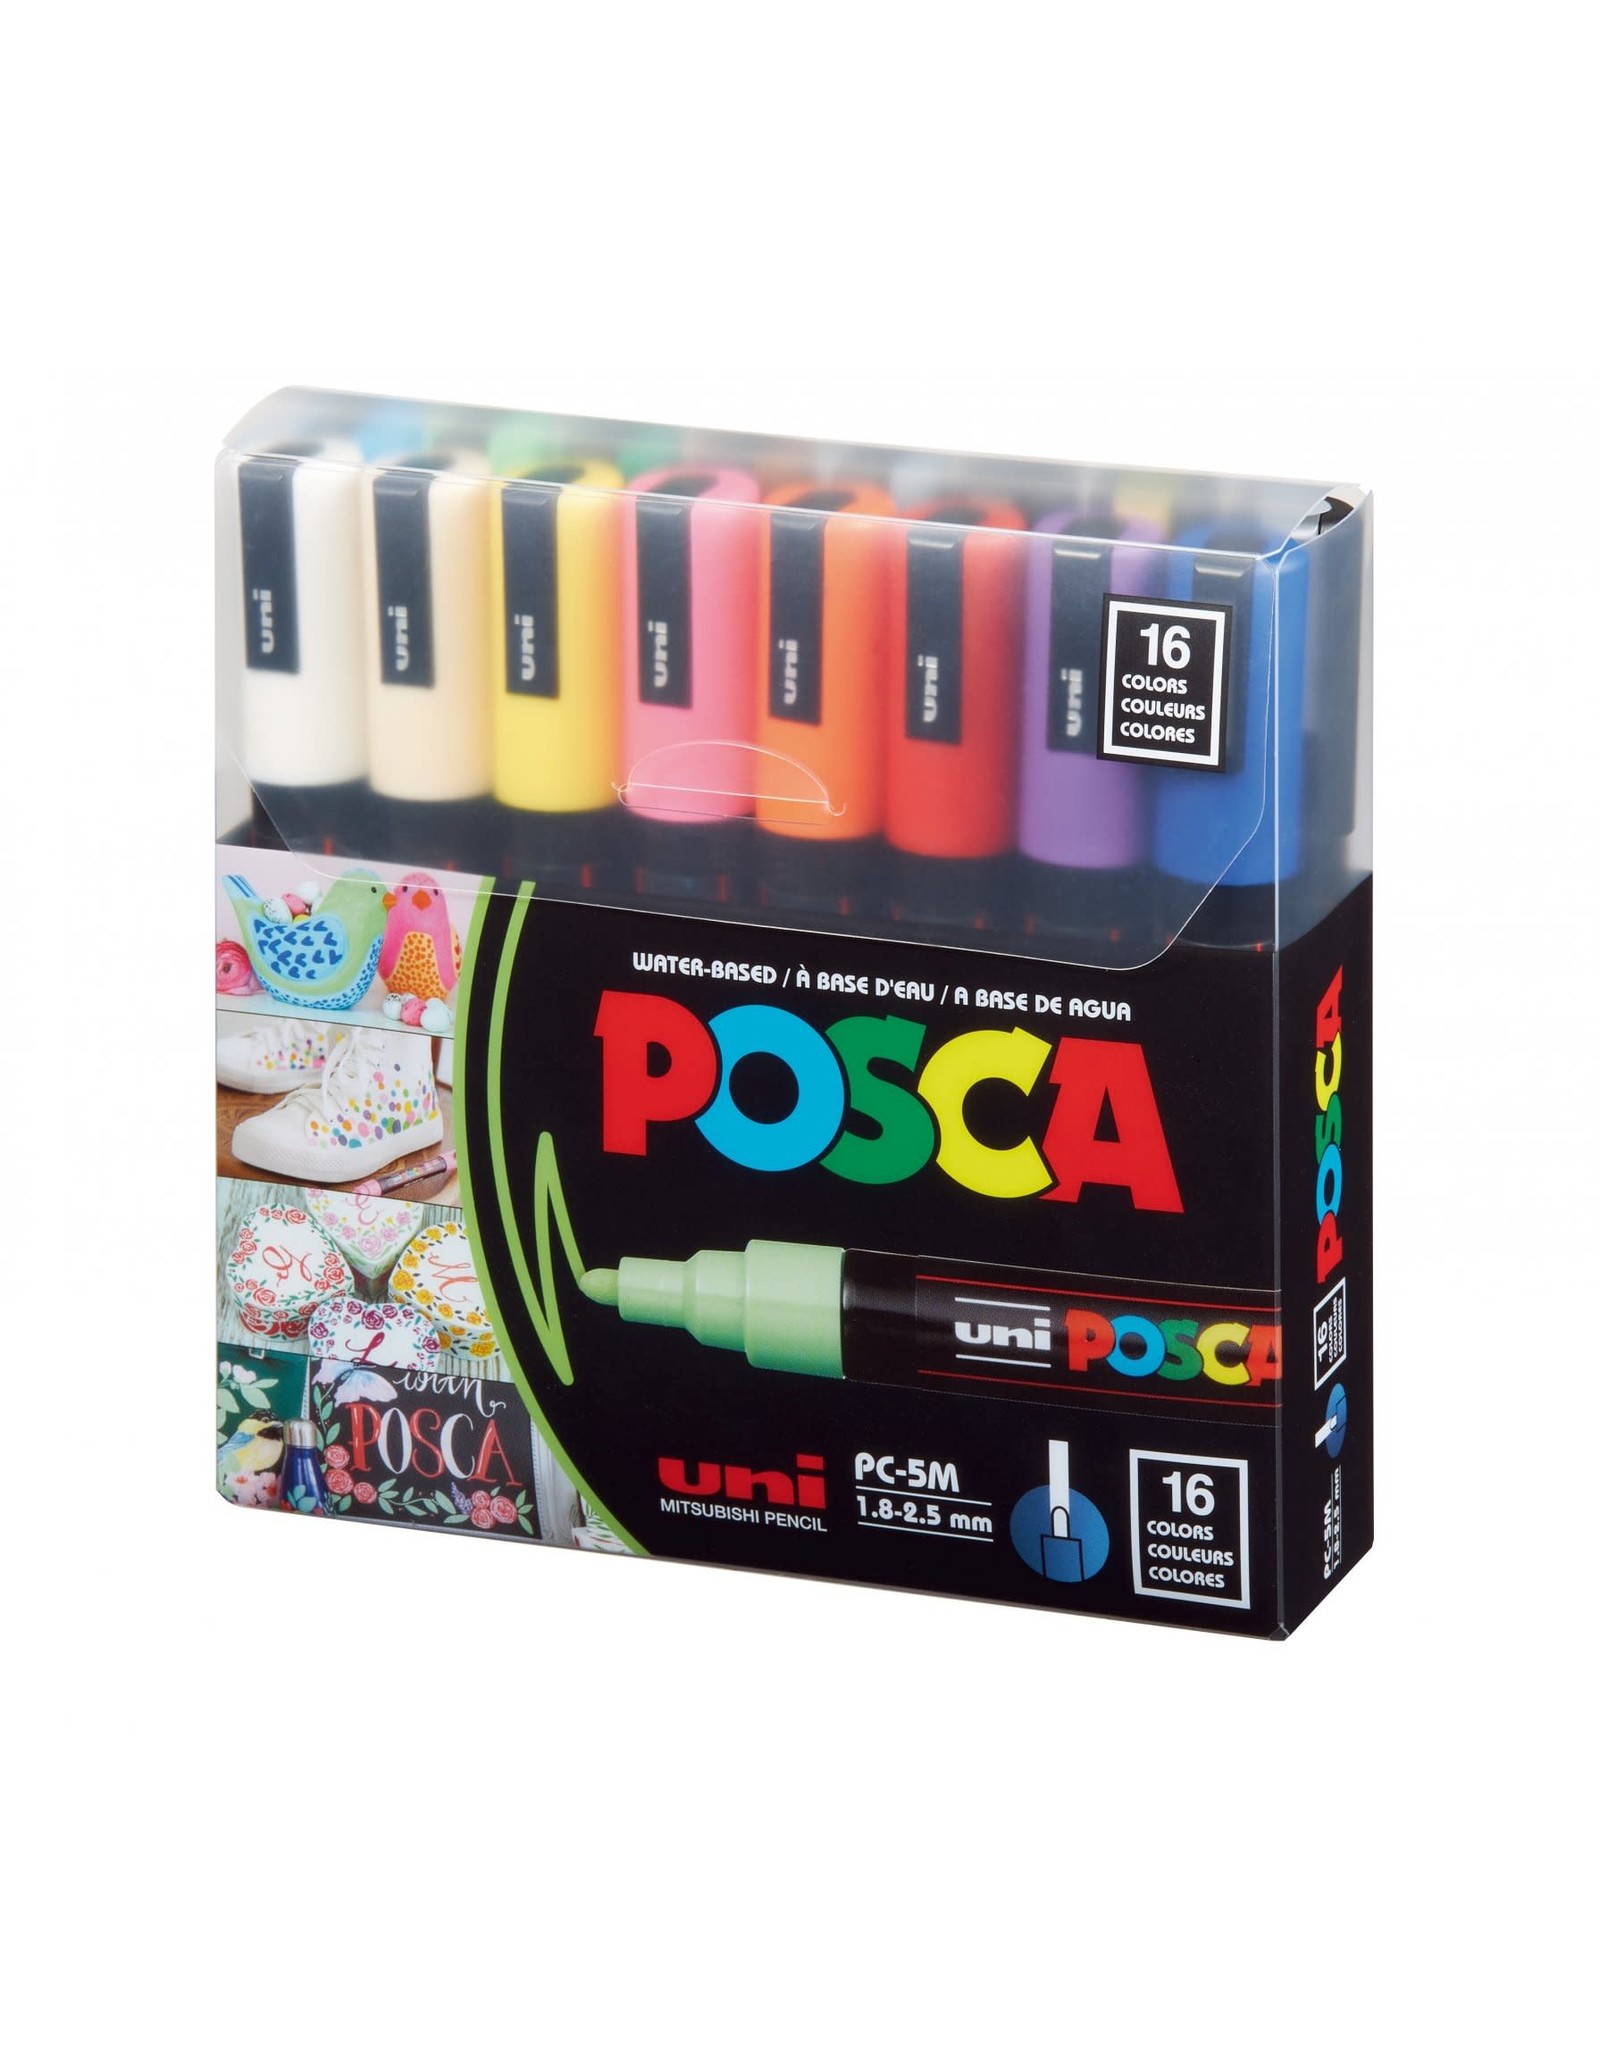 POSCA Uni POSCA Paint Markers, Basic Set of 16, Medium